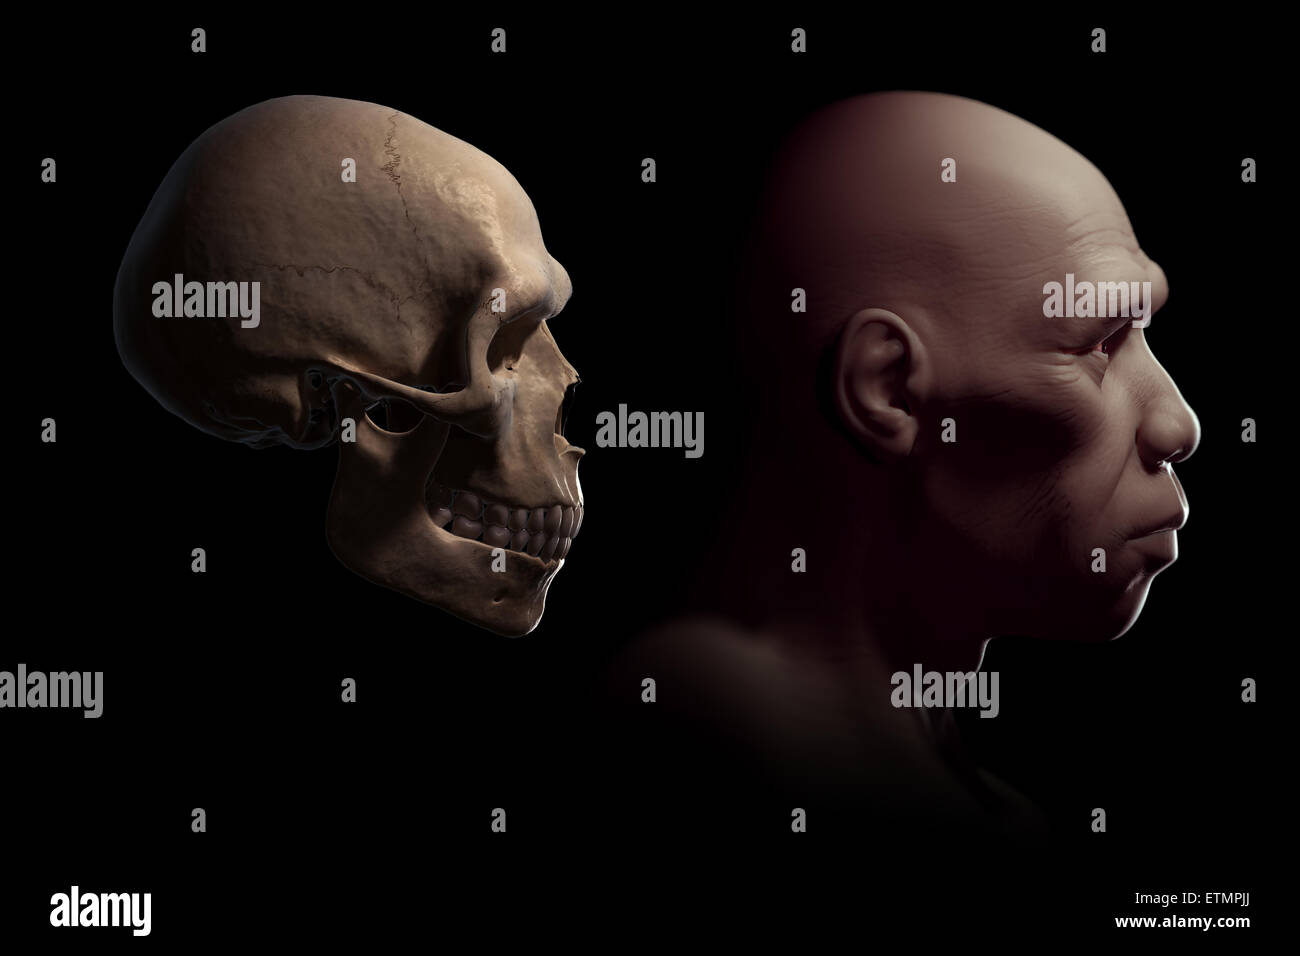 Representación de un Homo Sapiens o humano moderno junto a un cráneo humano para la comparación. Foto de stock